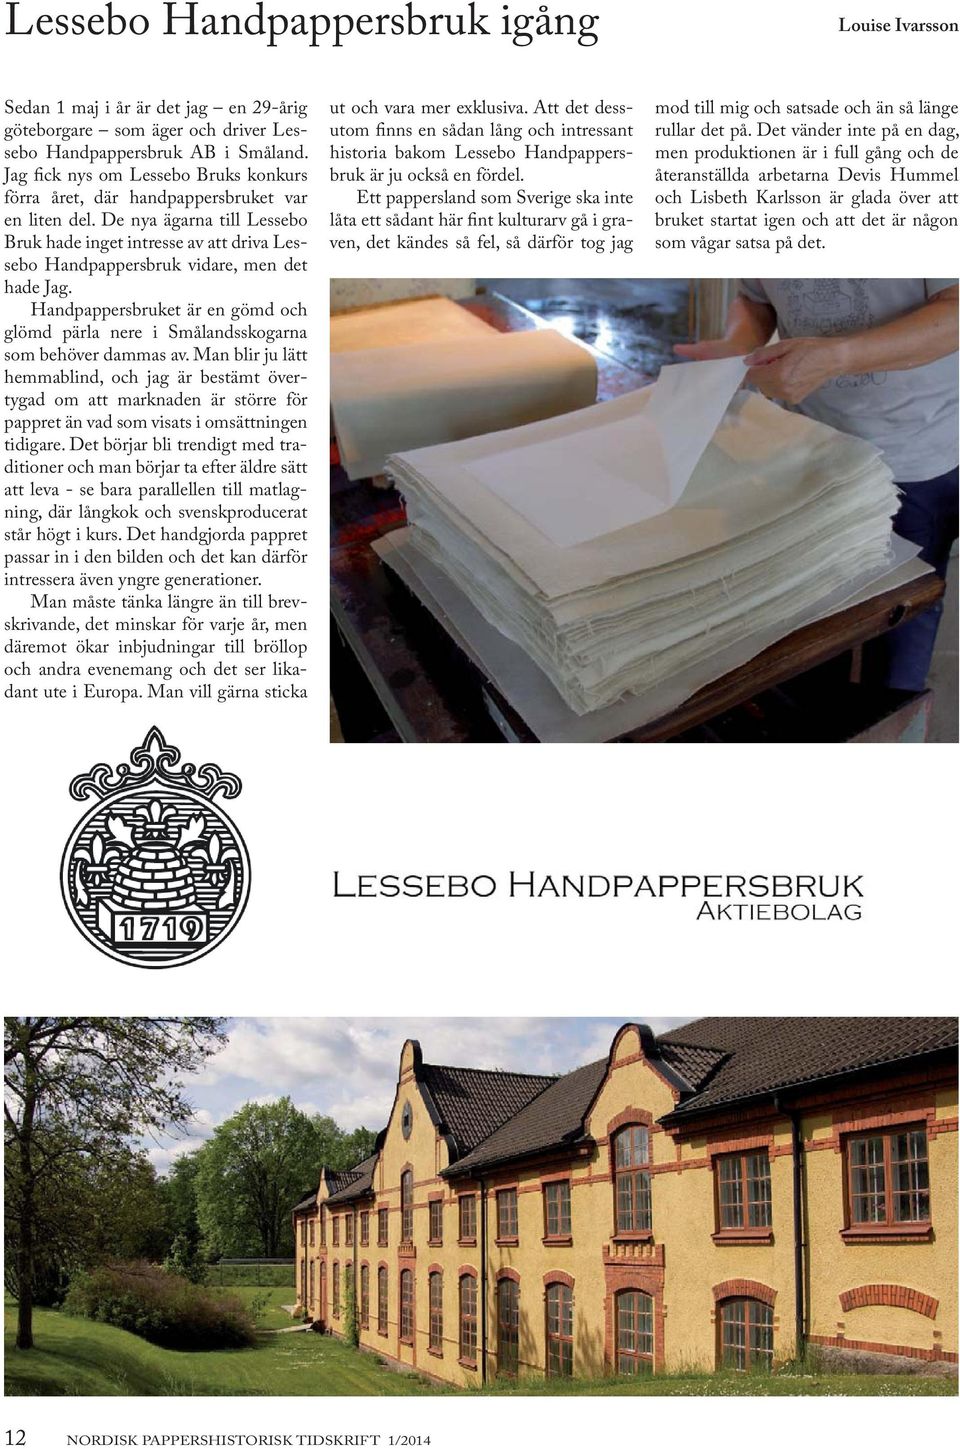 De nya ägarna till Lessebo Bruk hade inget intresse av att driva Lessebo Handpappersbruk vidare, men det hade Jag.